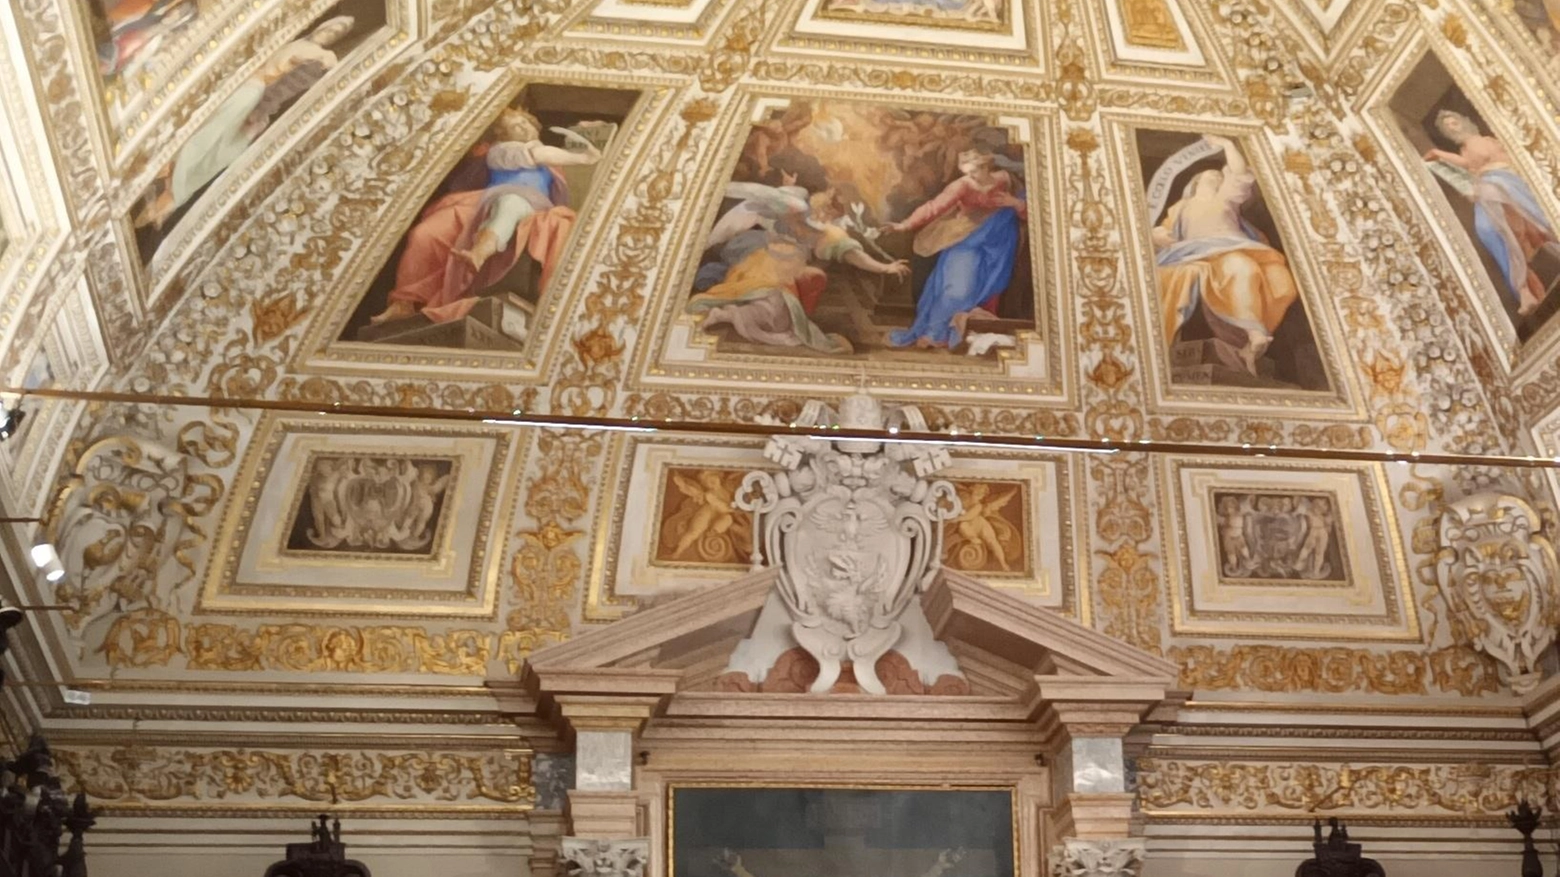 Restauri nella Santa Casa di Loreto: nuova luce per la cupola e la sala del Pomarancio